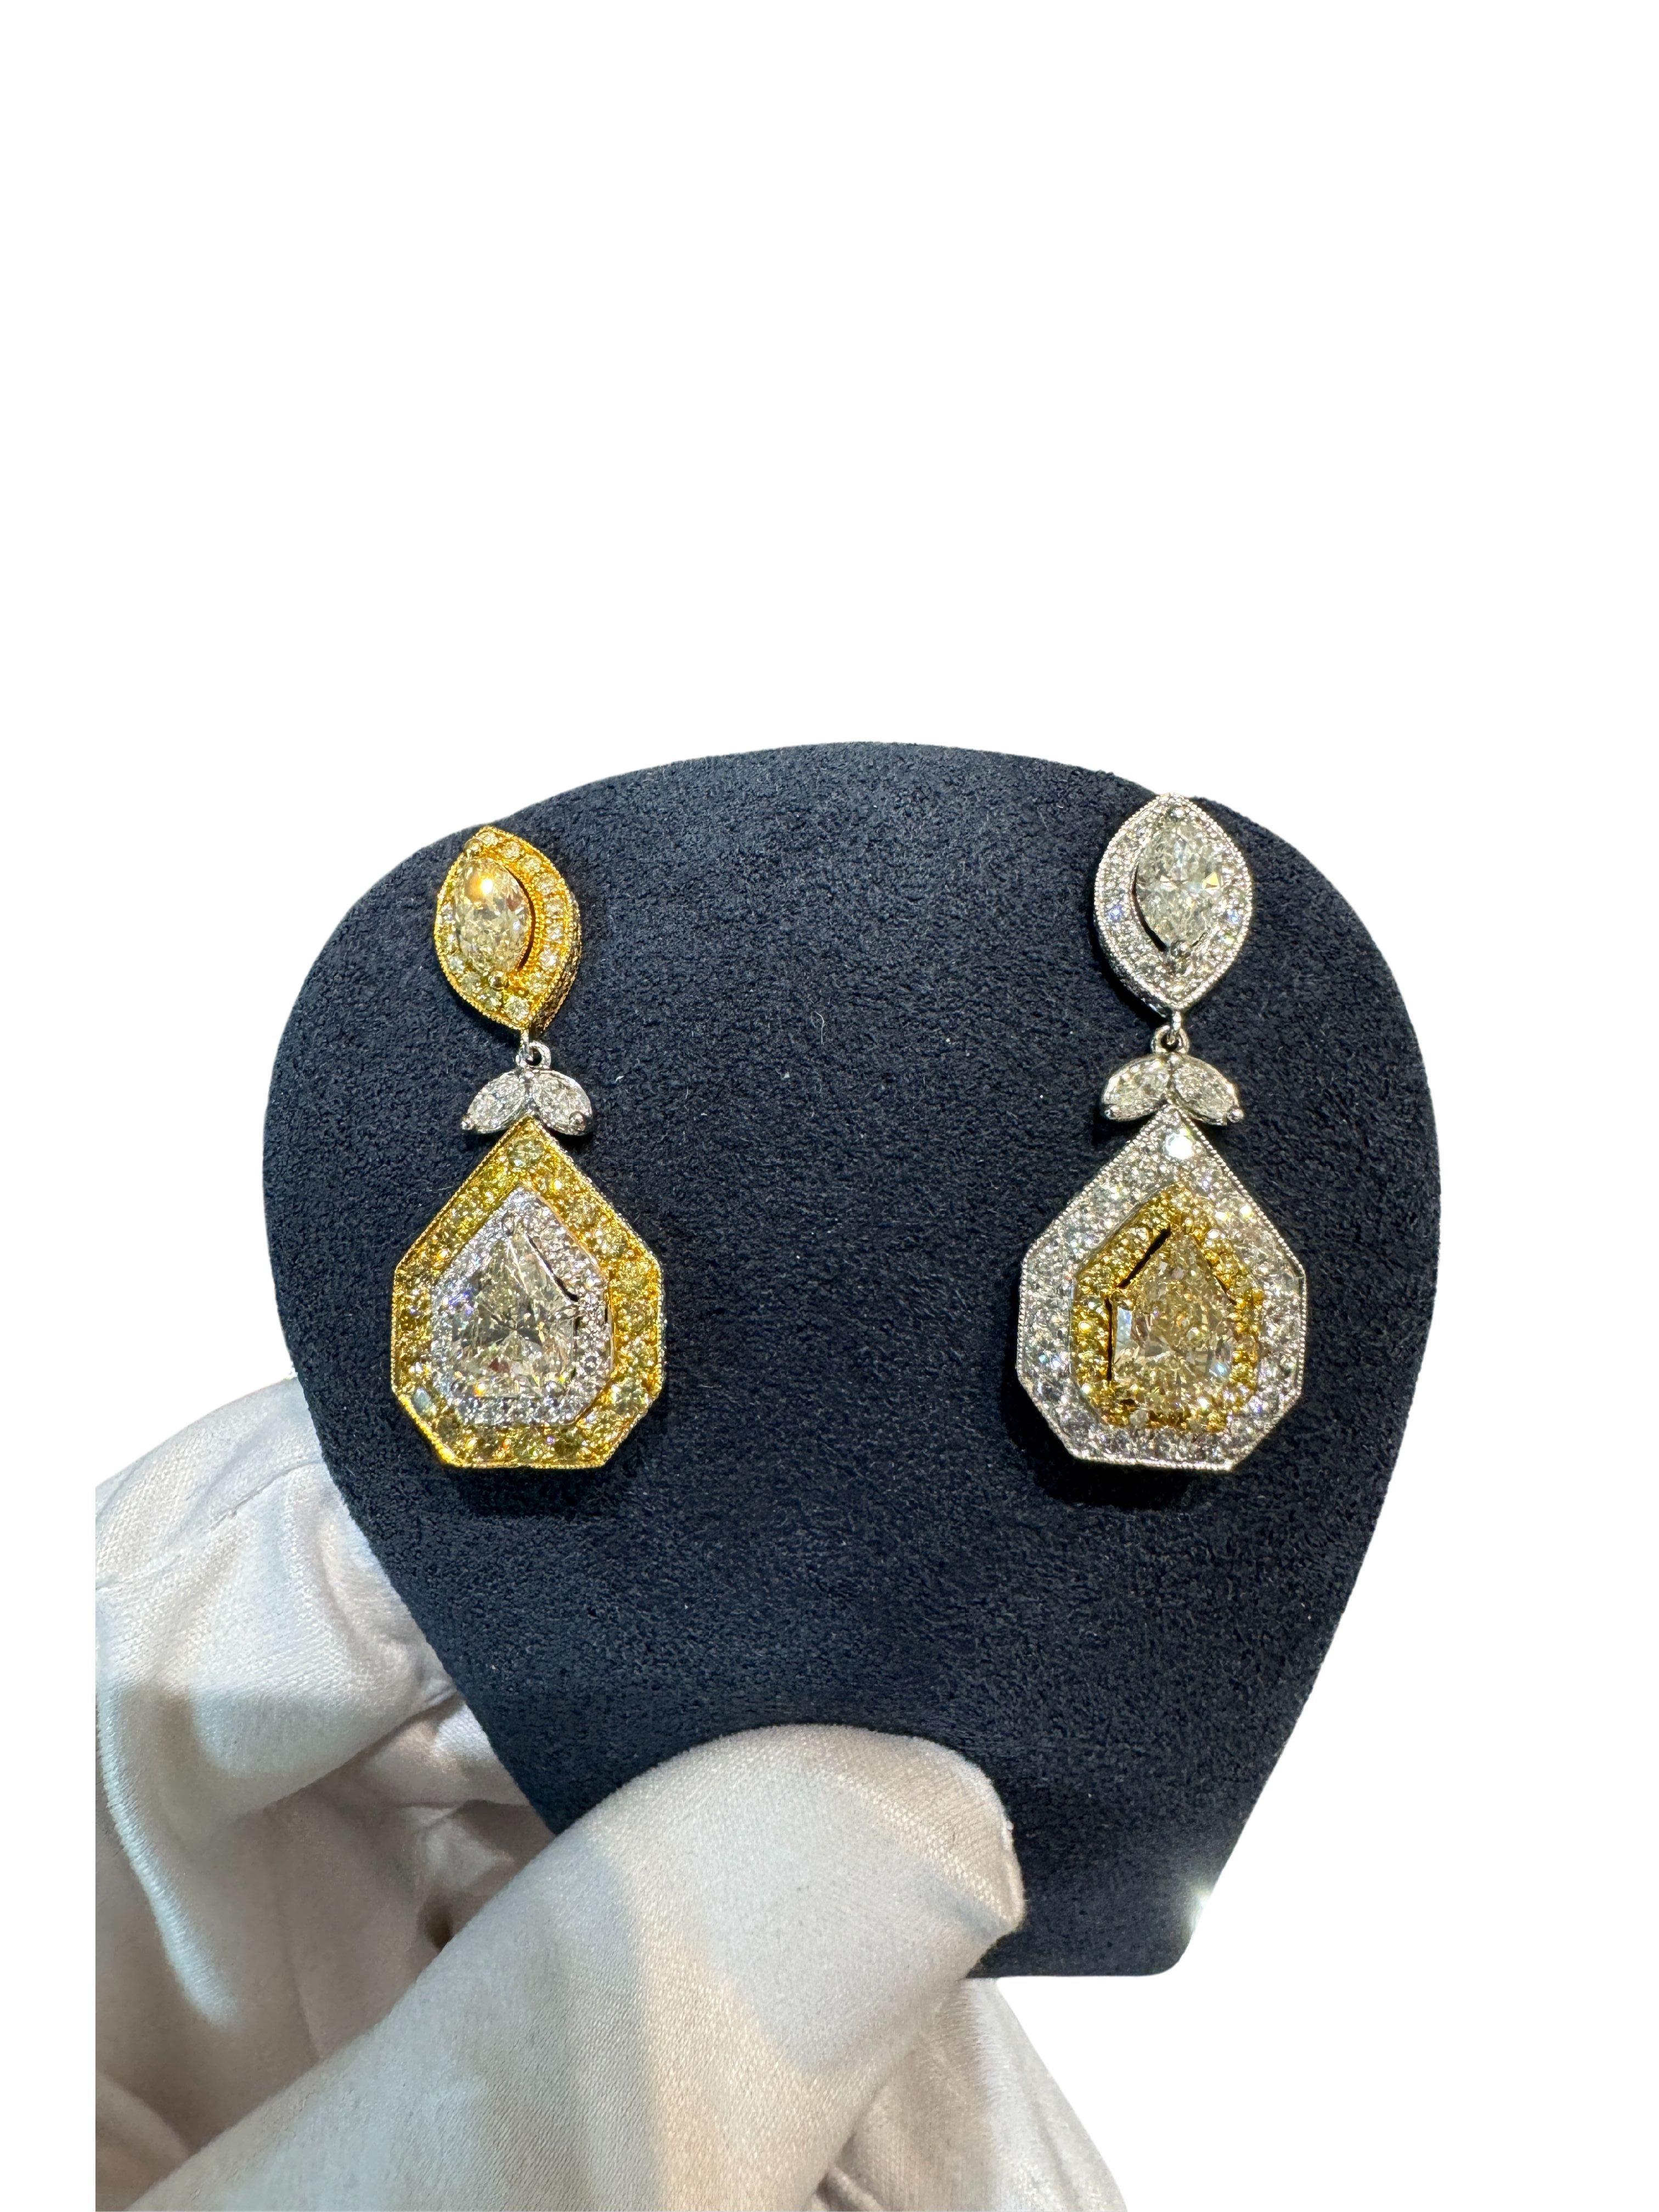 EGL-zertifizierte Multi-Cut-Diamanten in Weiß und Gelb Inverse Dangle-Drop-Ohrringe. 

Umgekehrte Ohrringe mit mehreren Schliffen und Tropfen. Weiße und gelbe Diamanten im Marquise-, Rund- und Phantasieschliff machen zusammen 5,68 Karat aus. Mit